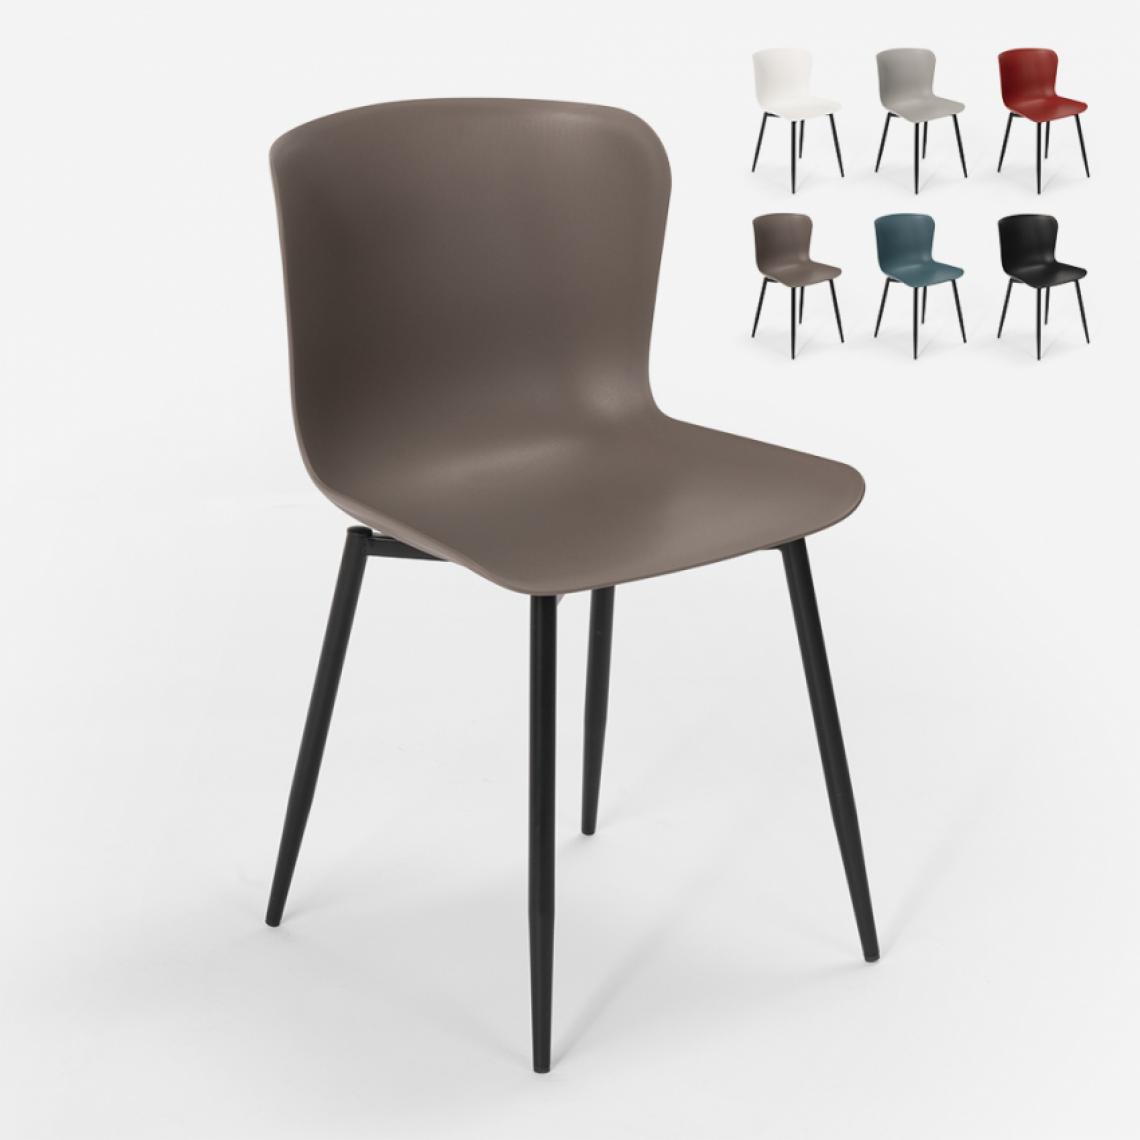 Ahd Amazing Home Design - Chaise design moderne en polypropylène et métal pour cuisine bar restaurant Chloe, Couleur: Gris foncé - Chaises